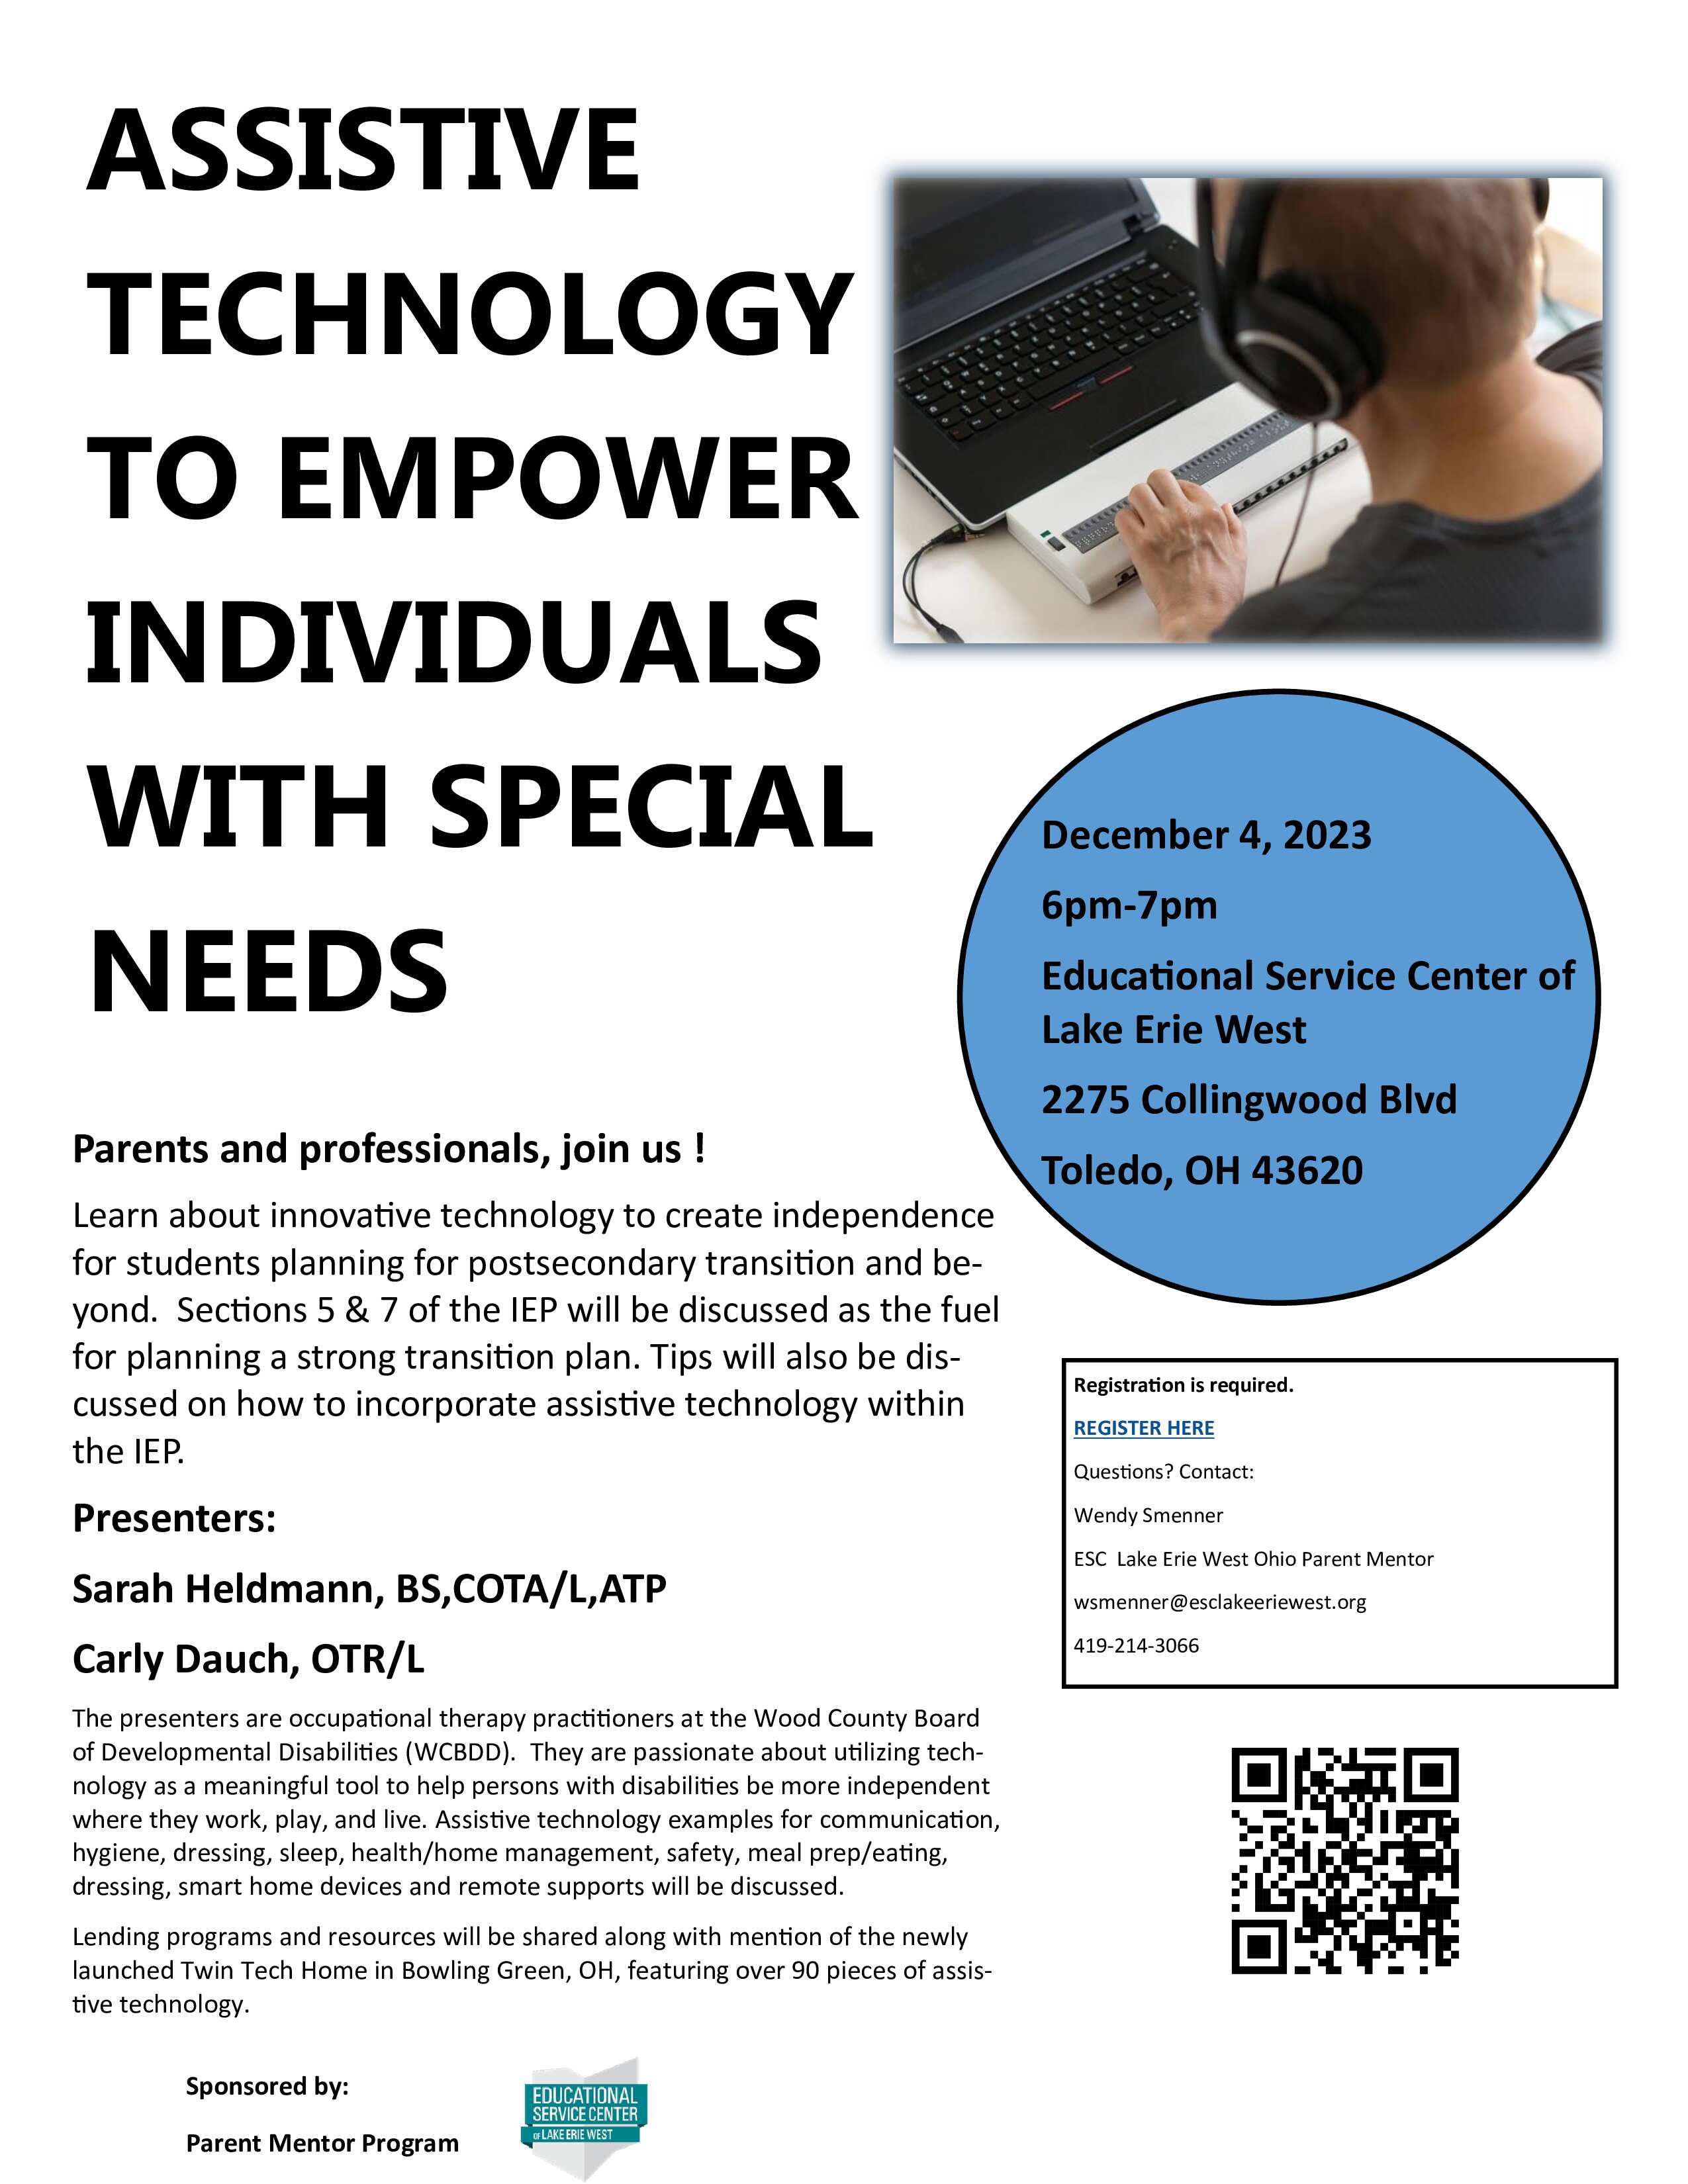 assistive technology flyer